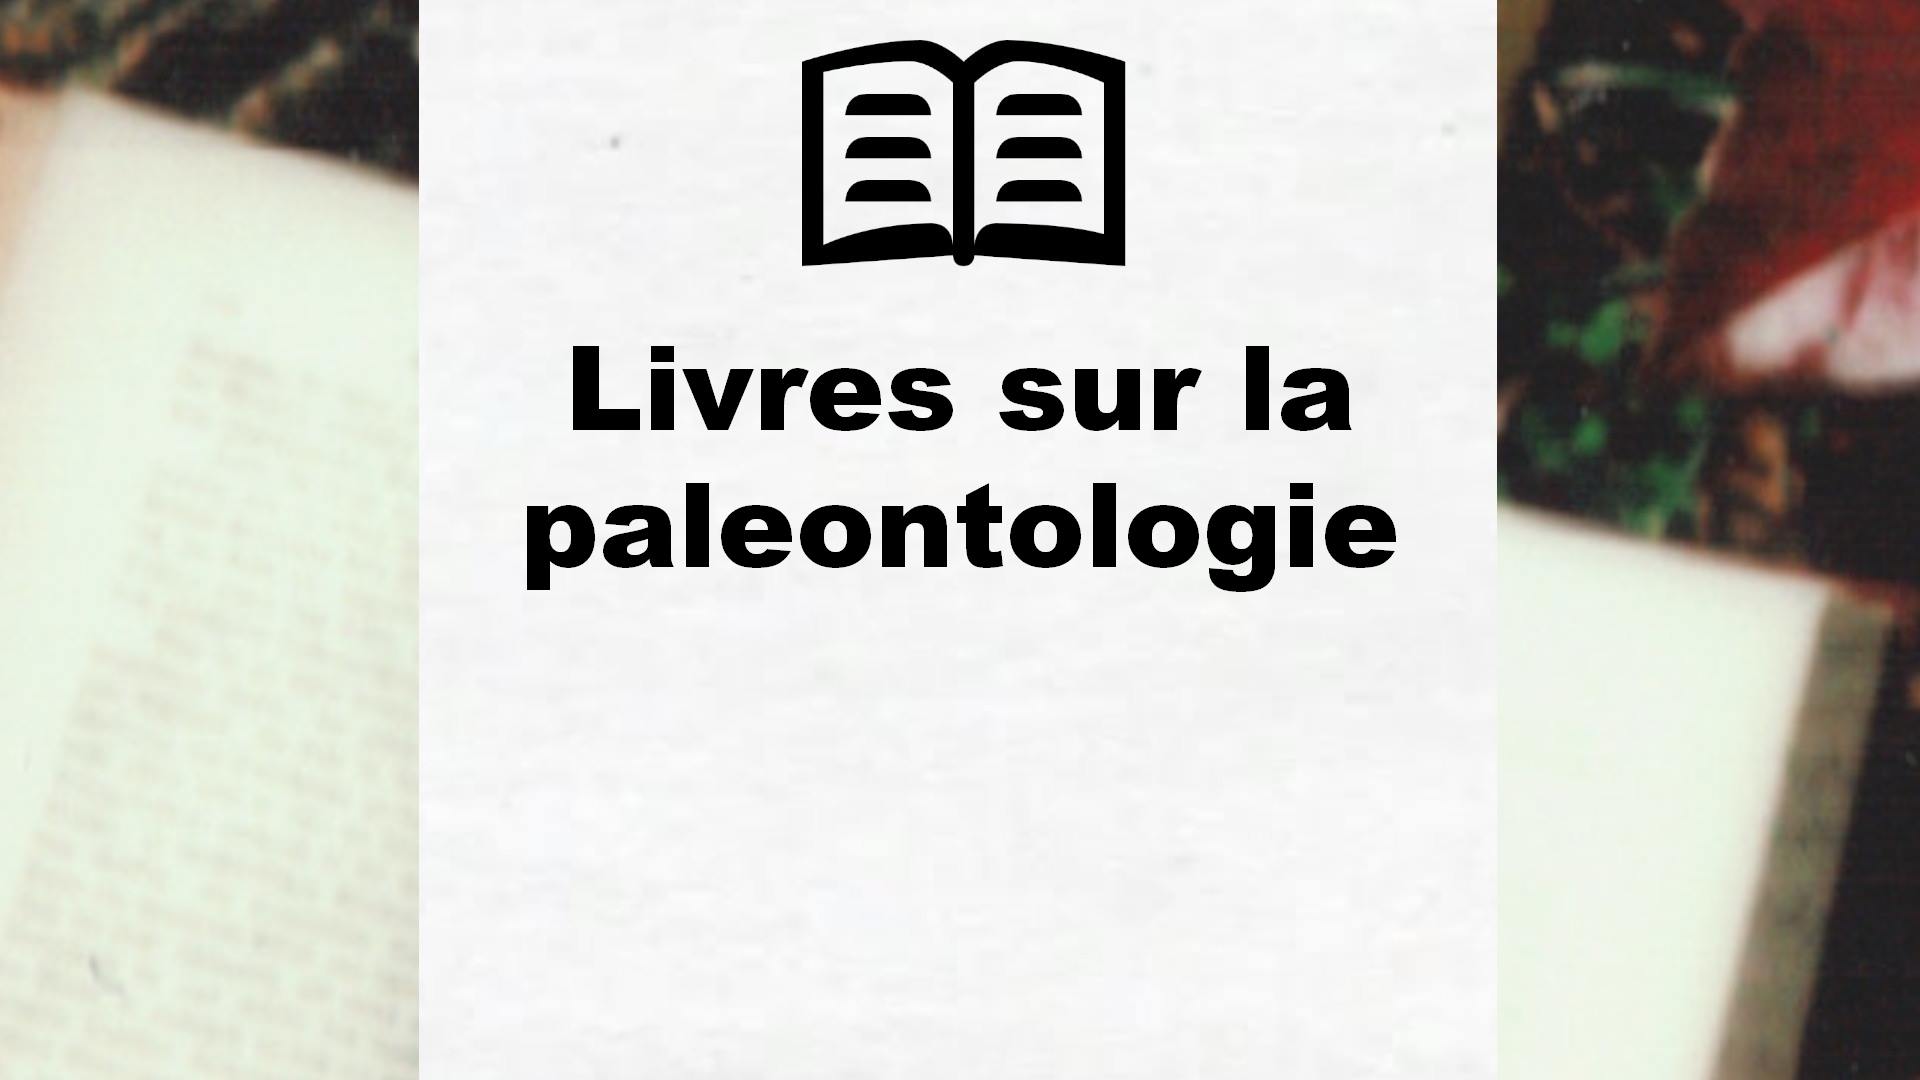 Livres sur la paleontologie